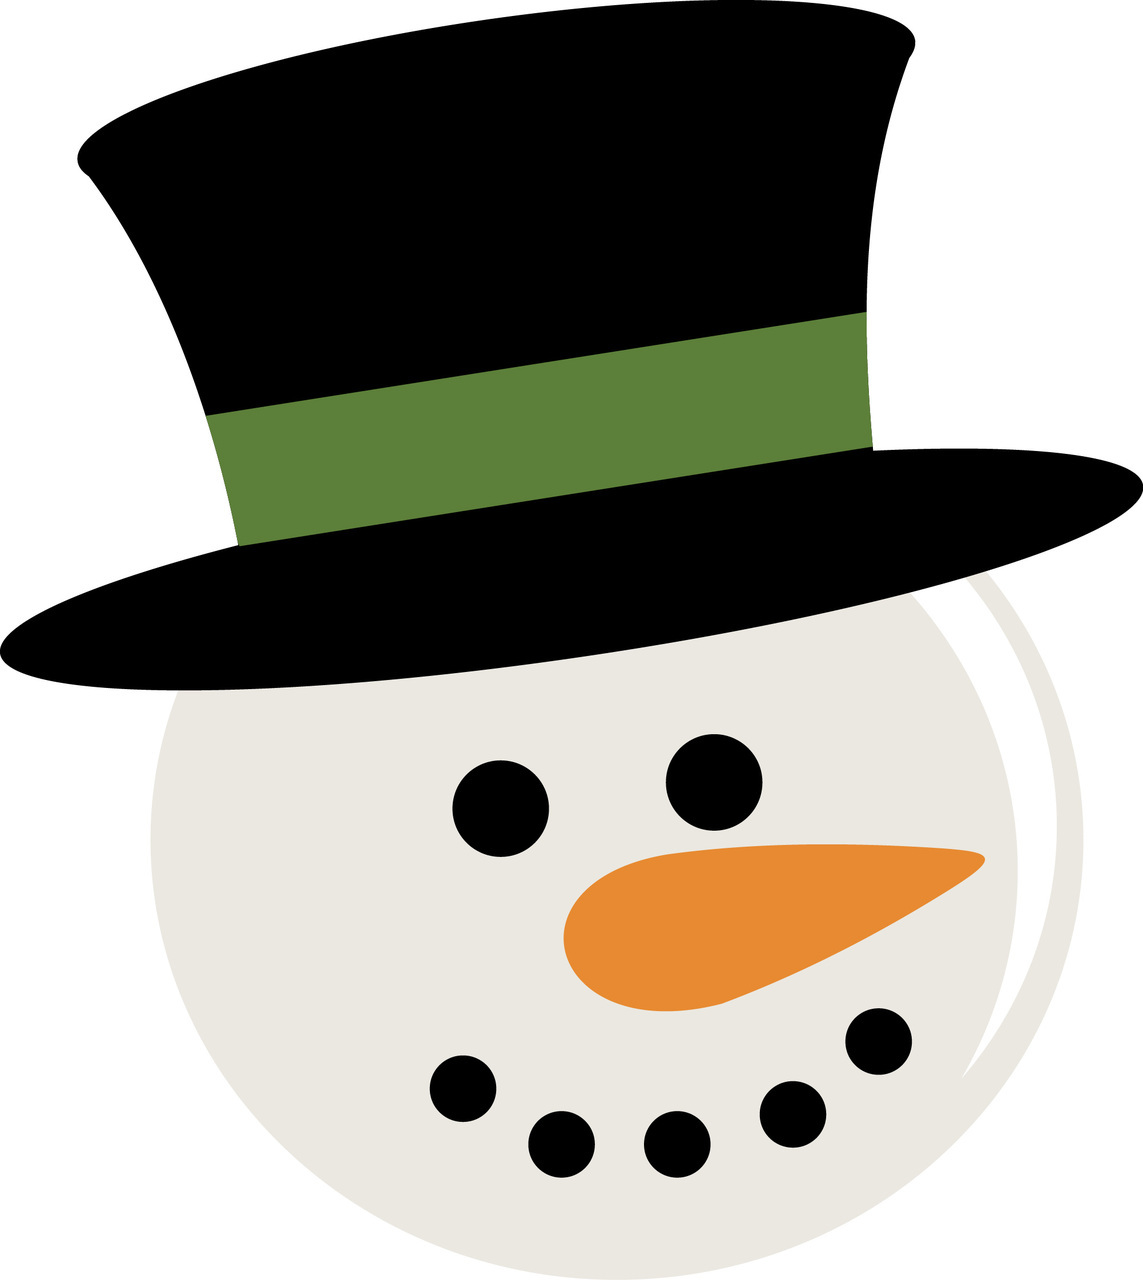 Snowman Head Ornament Clipart.